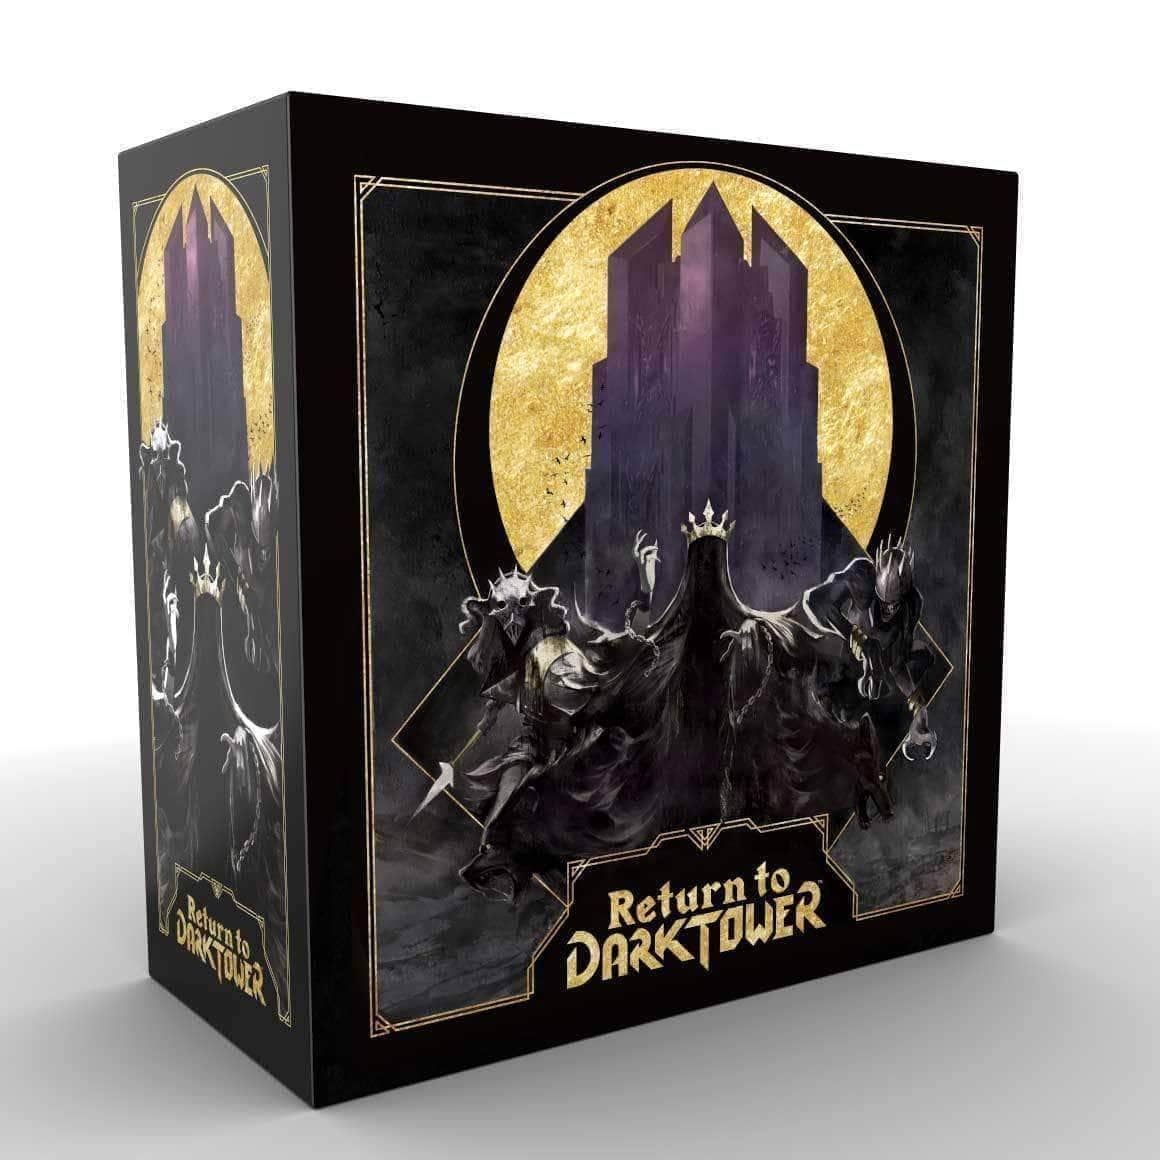 Επιστροφή στο Dark Tower: Φορτίστε το επιτραπέζιο παιχνίδι του πύργου (Kickstarter Pre-Order Special) Kickstarter Restoration Games KS000984B